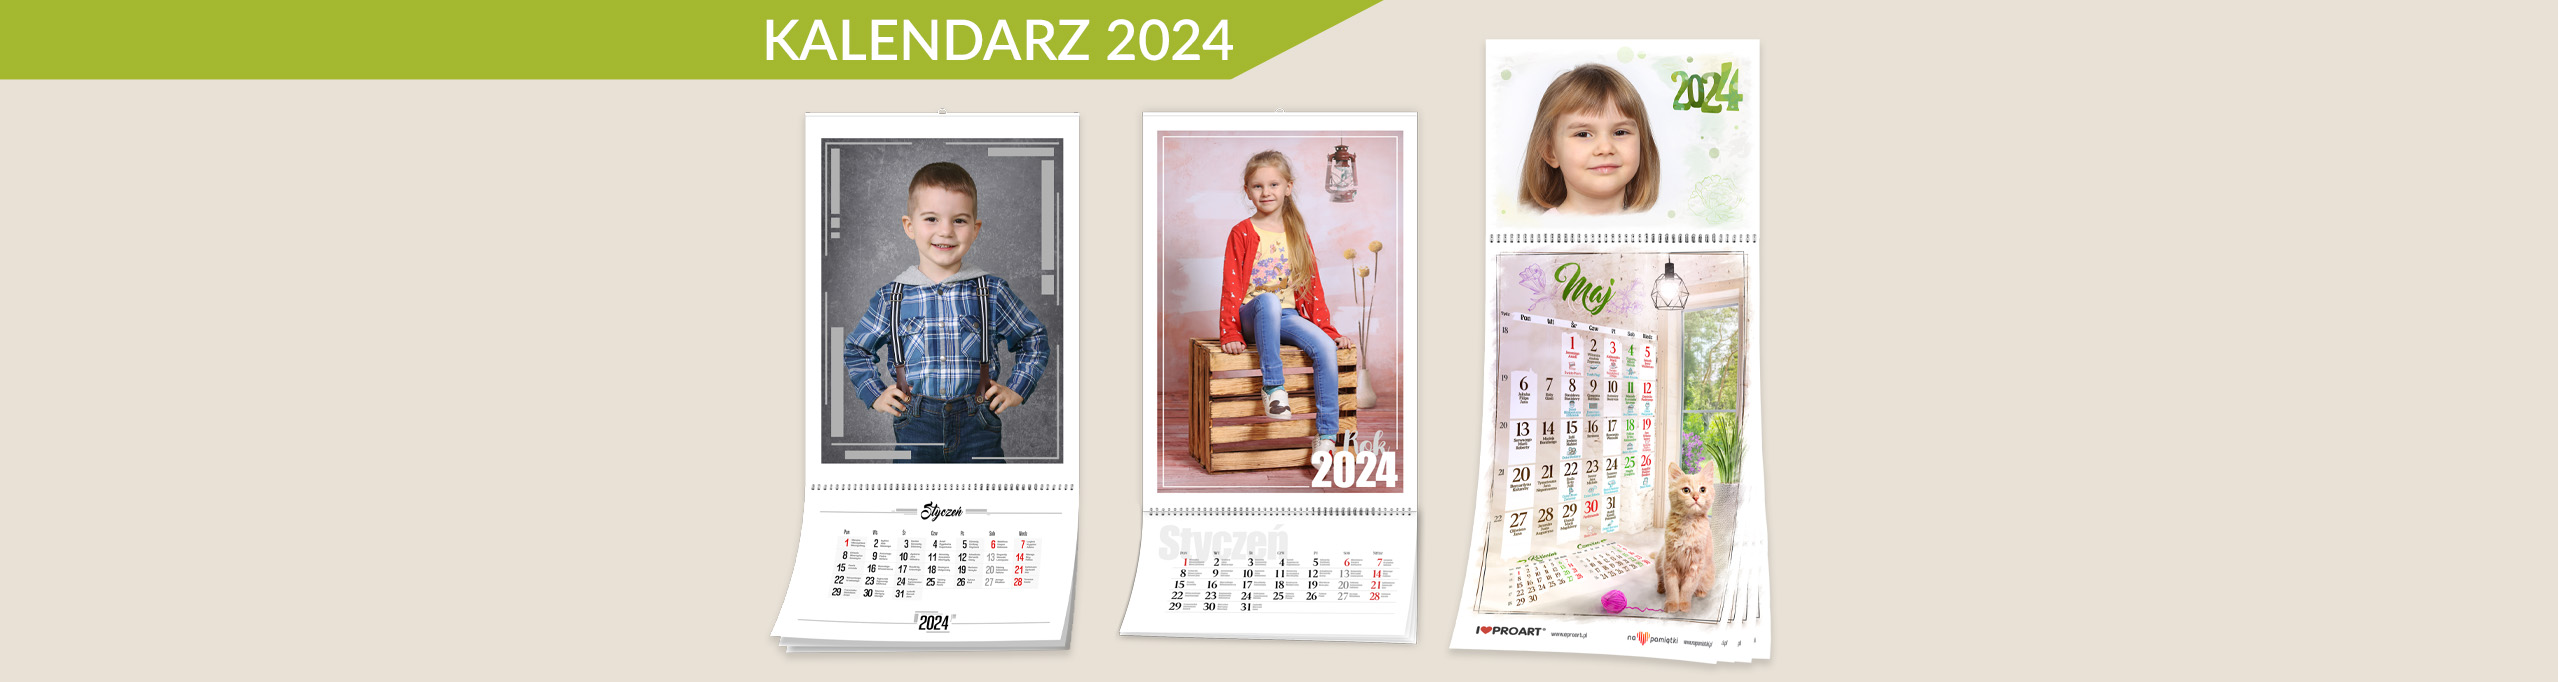 2024_kalendarz